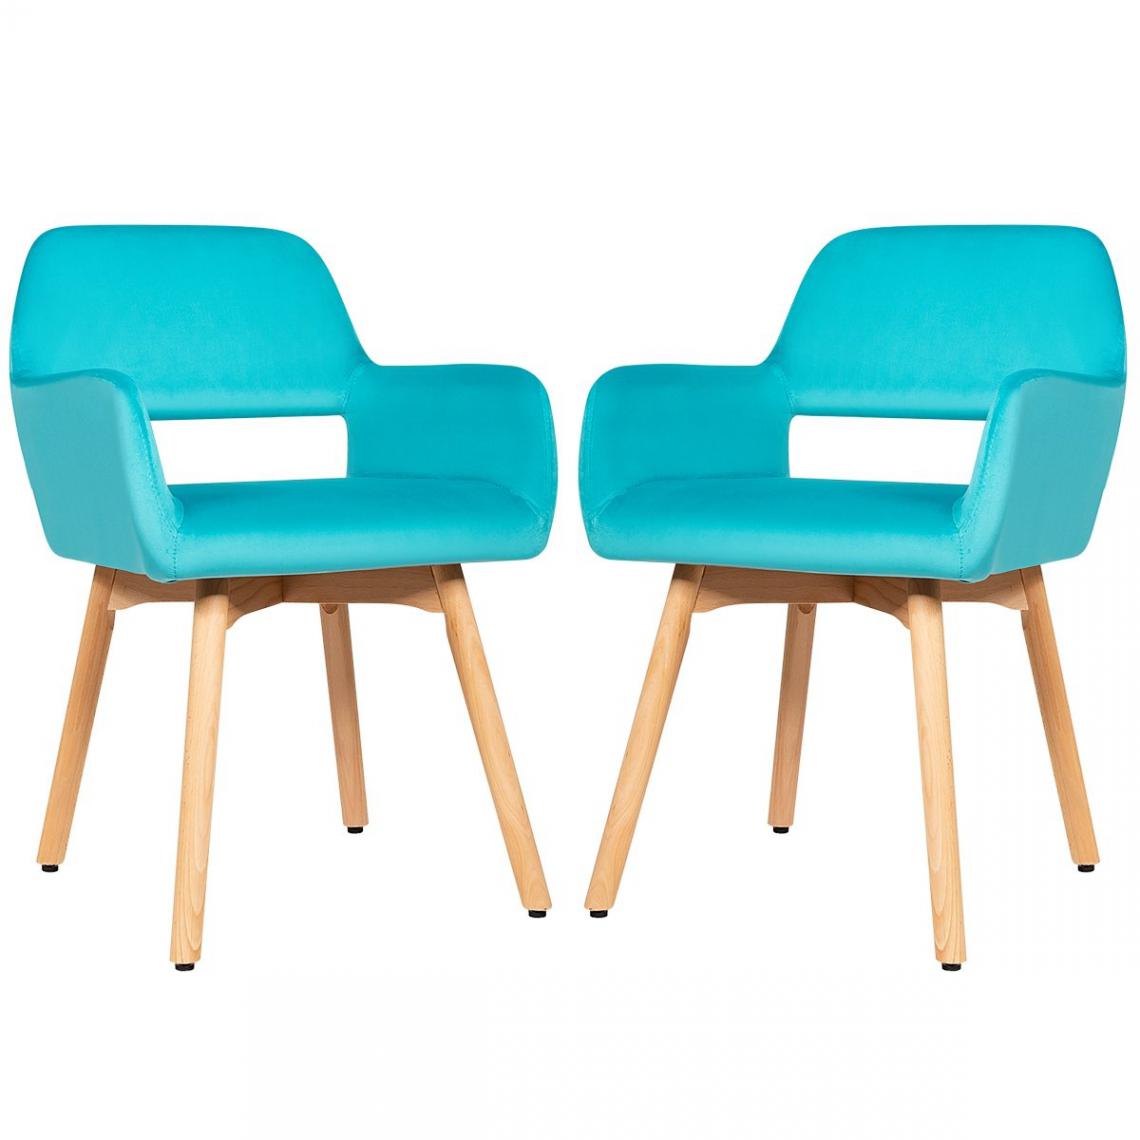 Decoshop26 - Lot de 2 chaises avec accoudoirs et coussin rembourré chaises de loisirs avec pieds en hêtre bleu 20_0000732 - Chaises